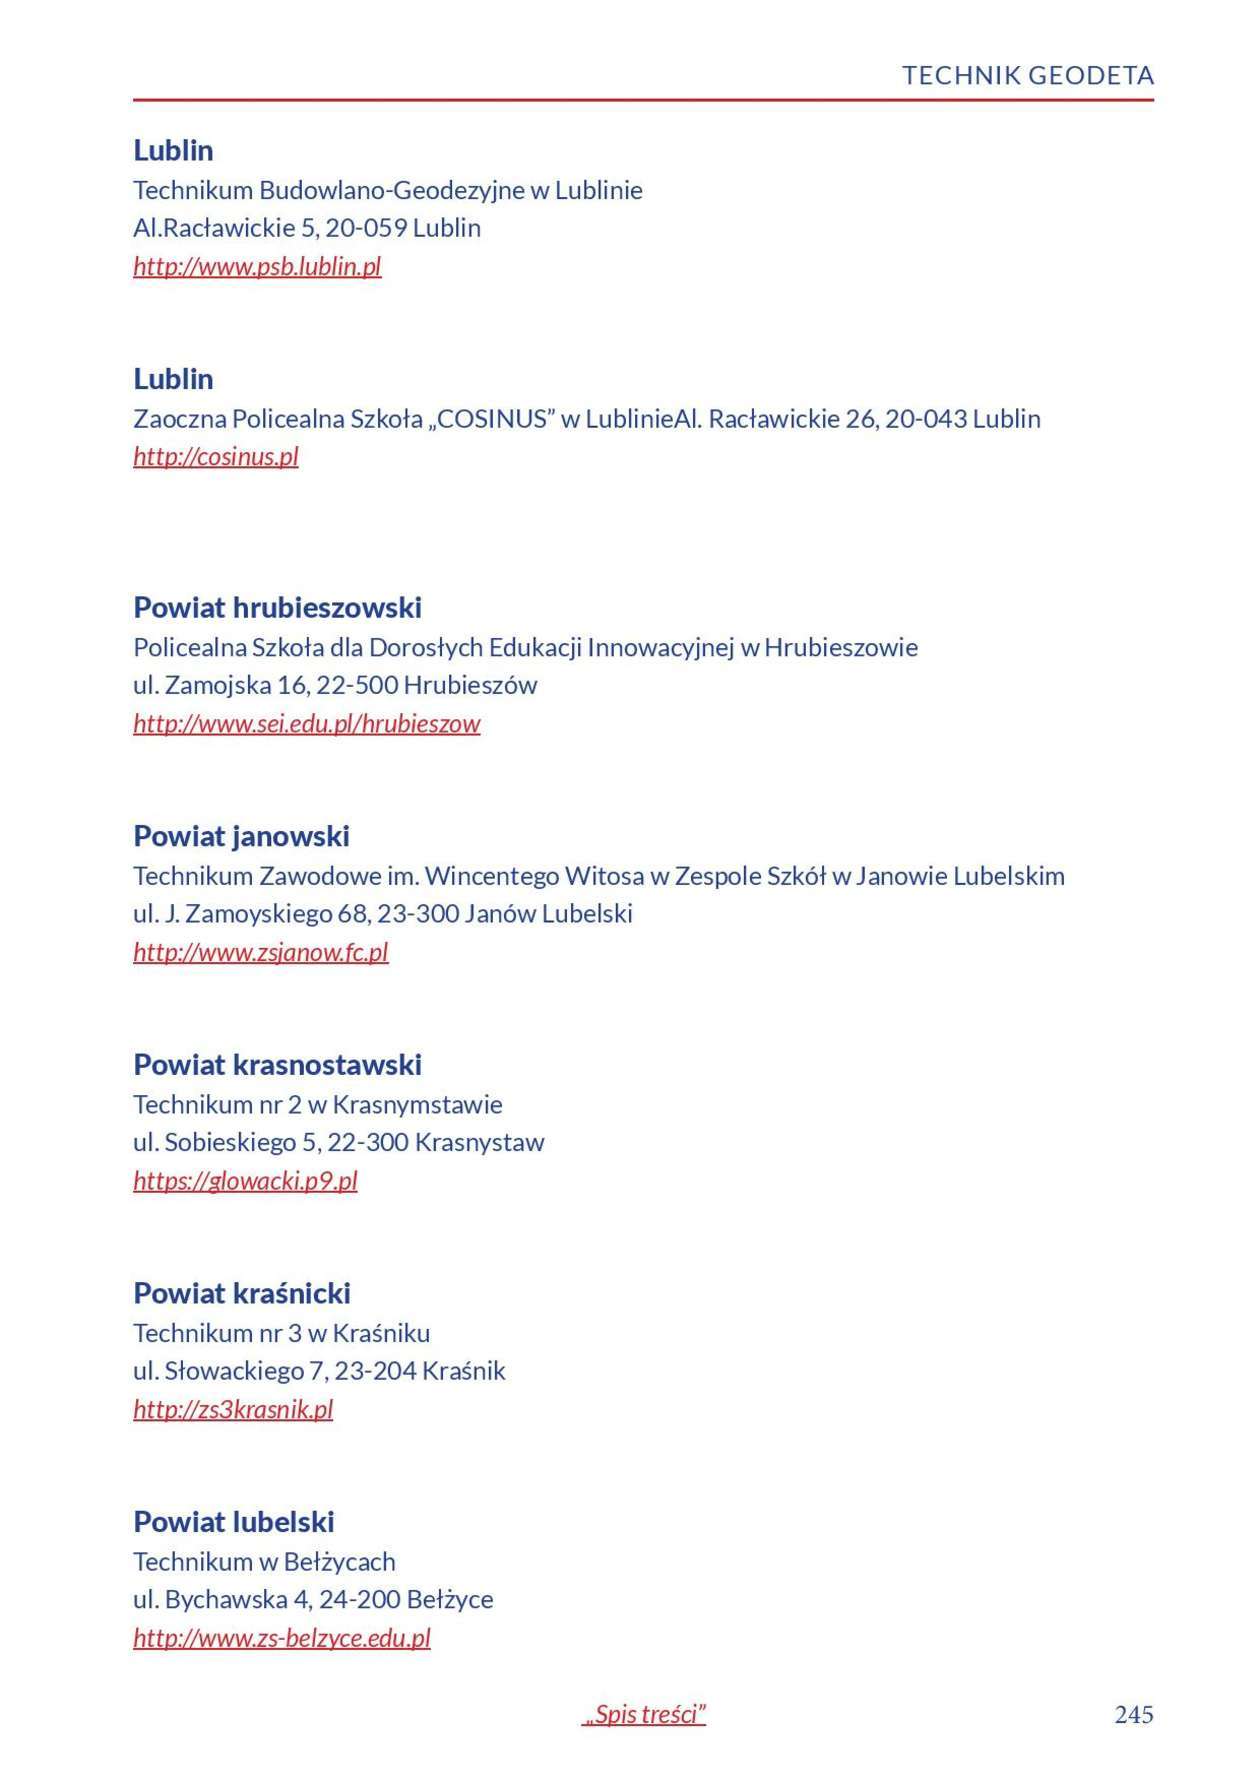  Informator o zawodach 2018/2019 w woj. lubelskim. Część 2 (zdjęcie 46) - Autor: Kuratorium Oświaty w Lublinie